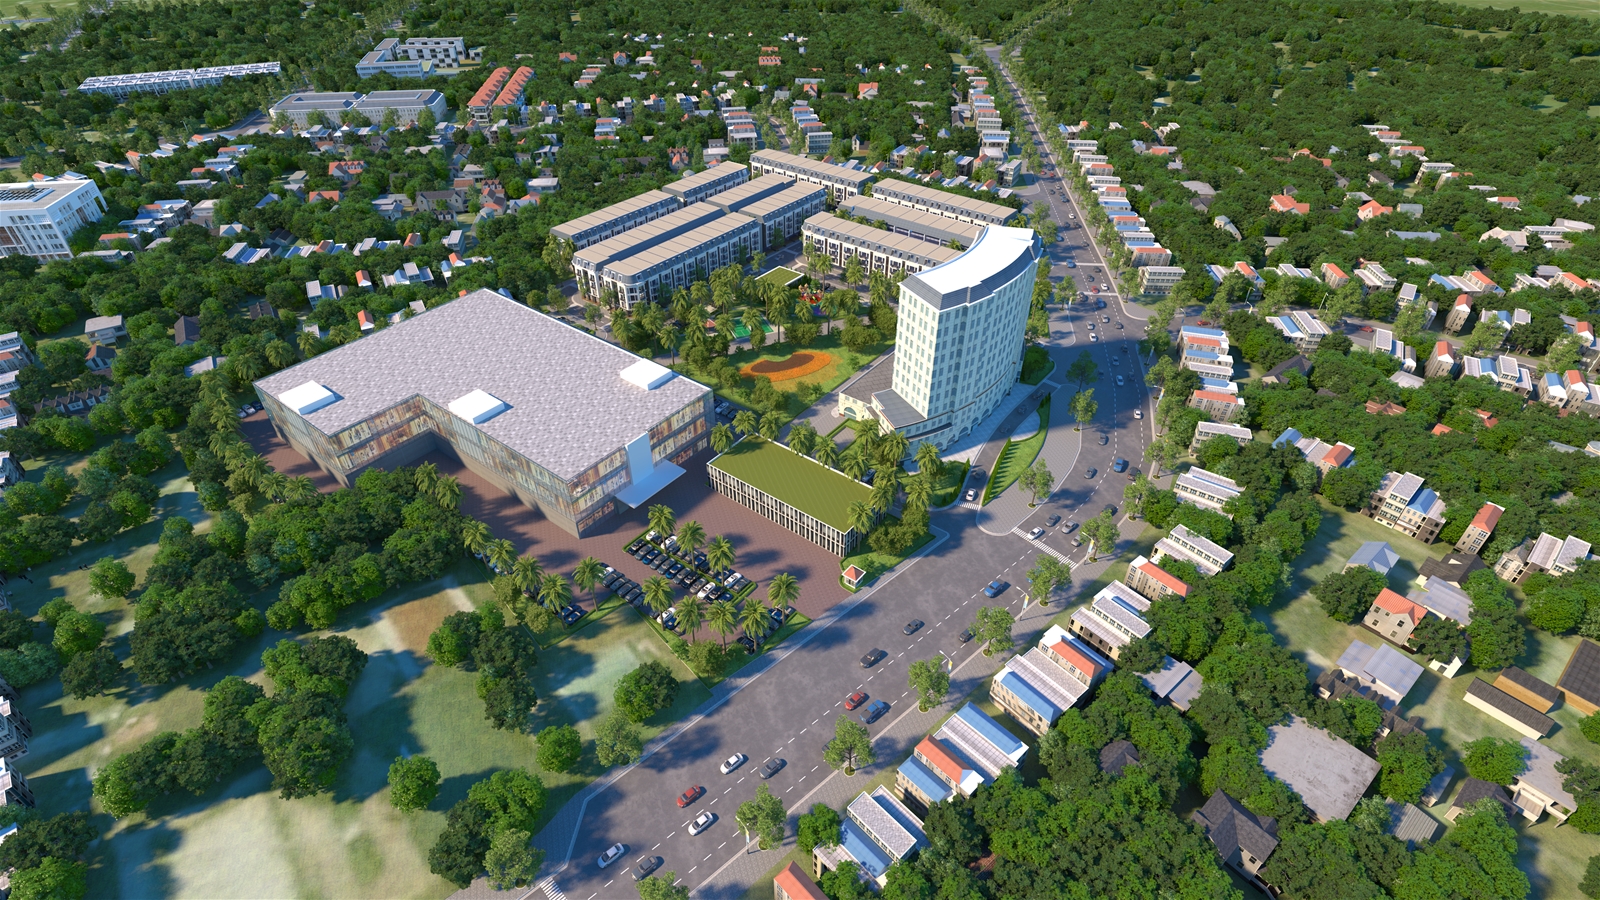 Phối cảnh dự án Tổ hợp khách sạn và nhà phố thương mại FLC HillTop Gia Lai do Tập đoàn FLC nghiên cứu đầu tư ở Gia Lai